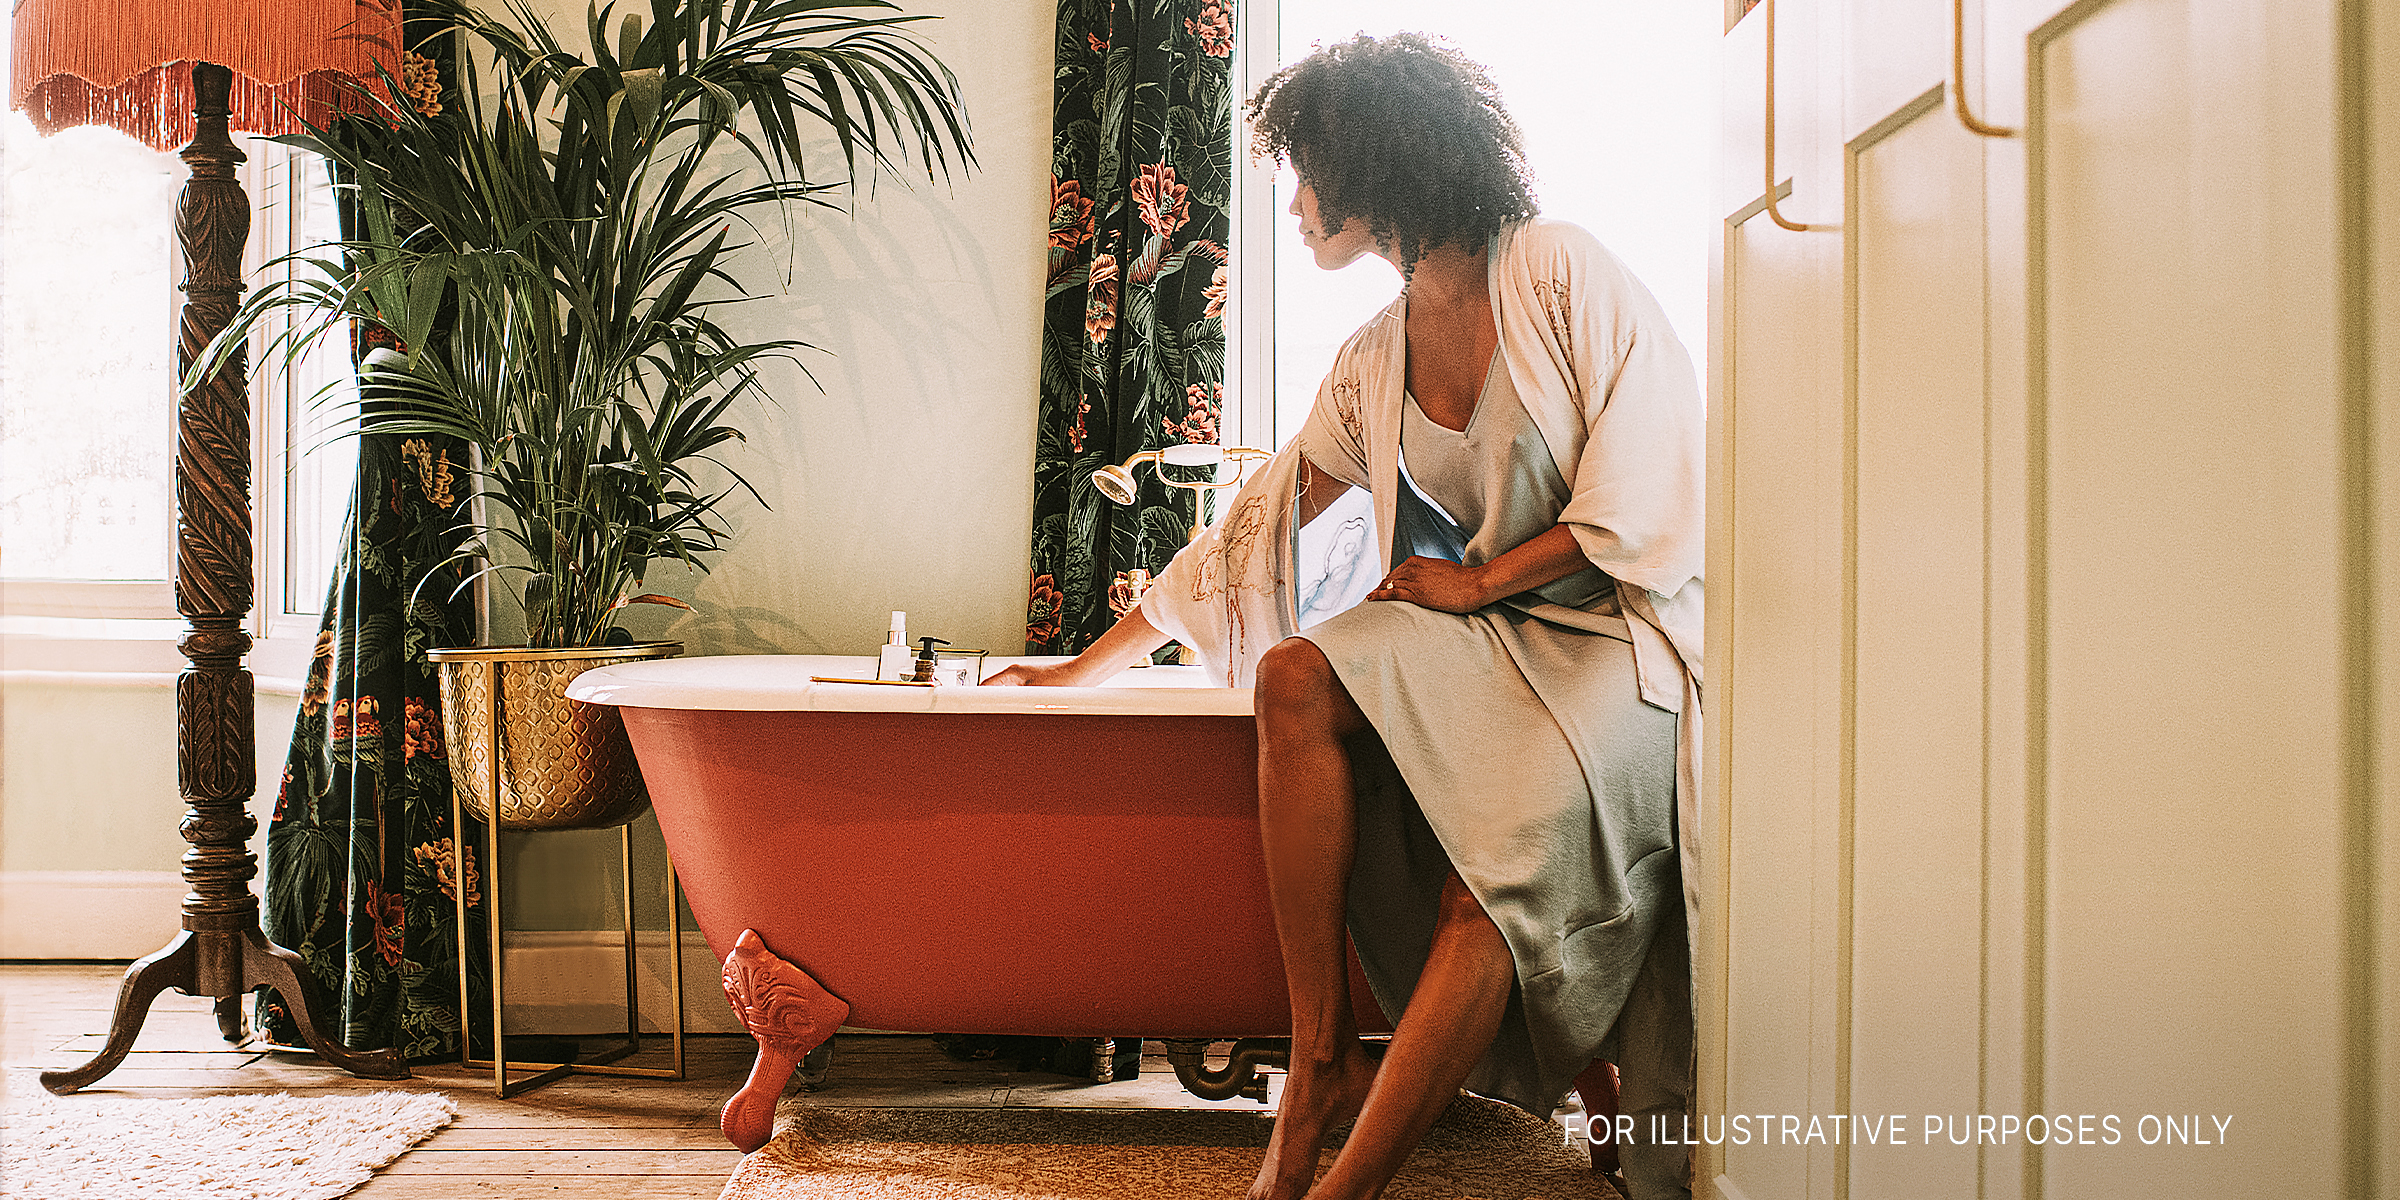 Une femme perchée sur une baignoire | Source : Getty Images